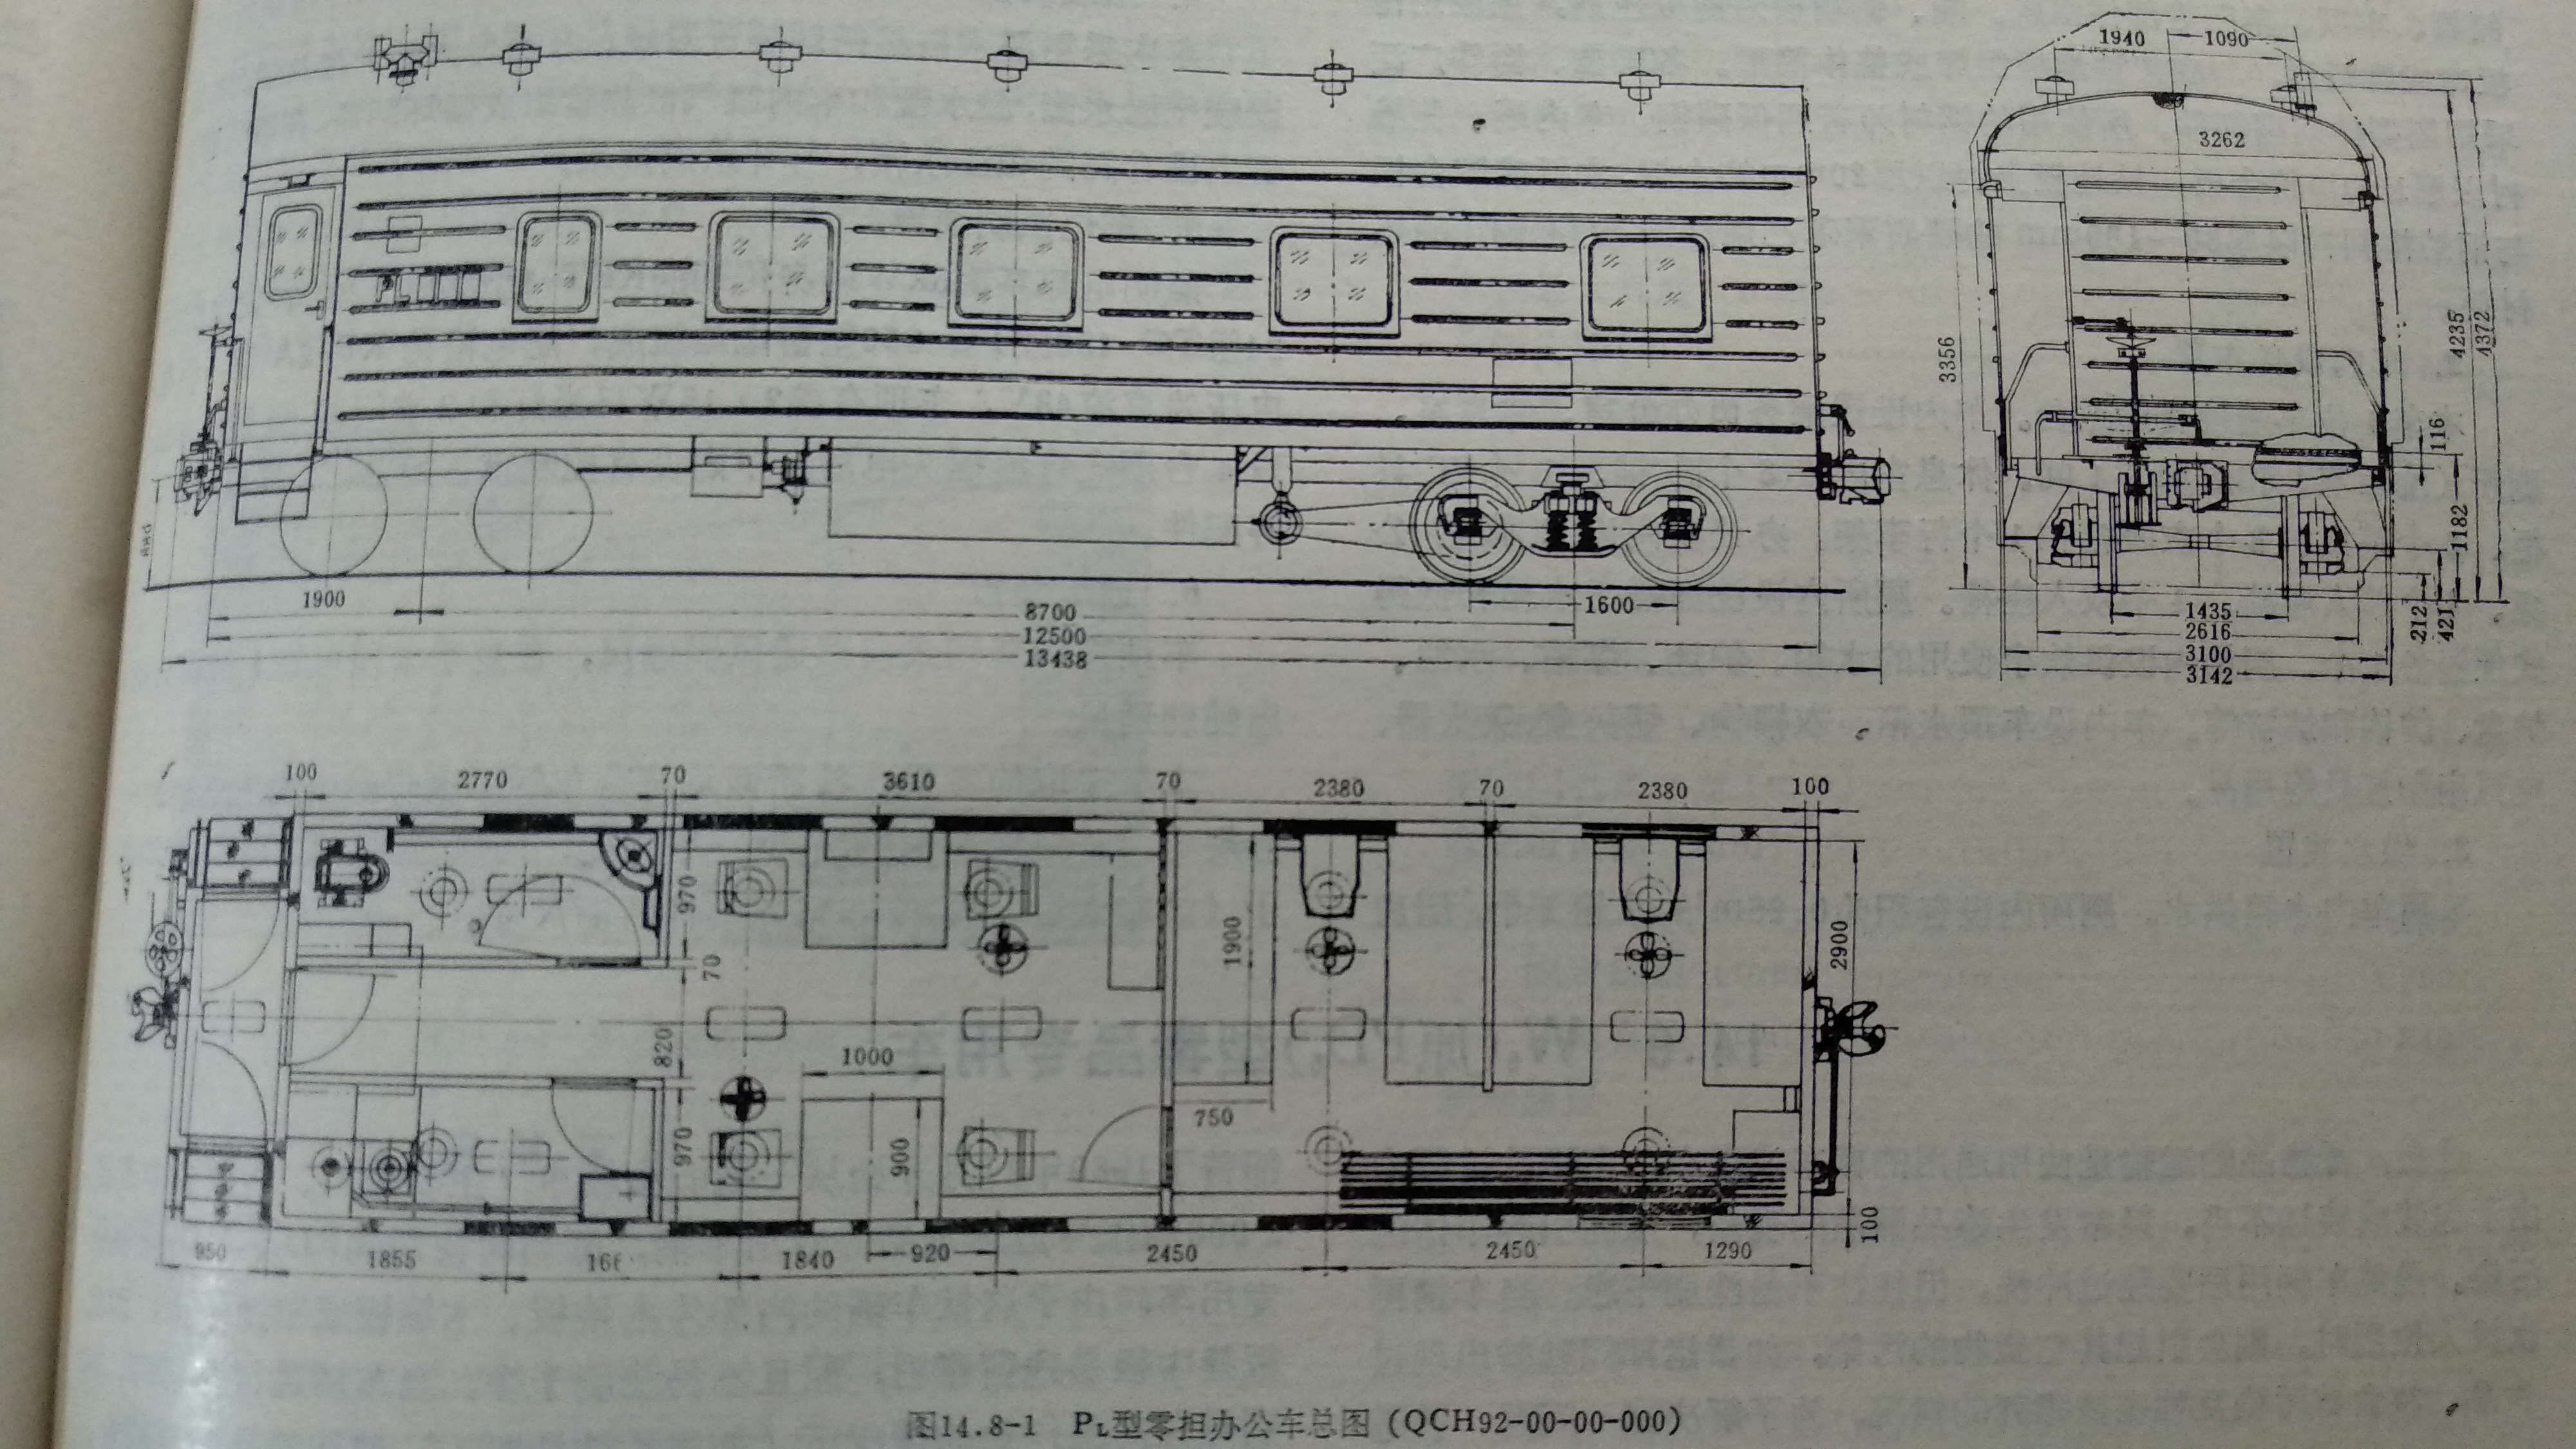 地铁列车车厢结构图图片